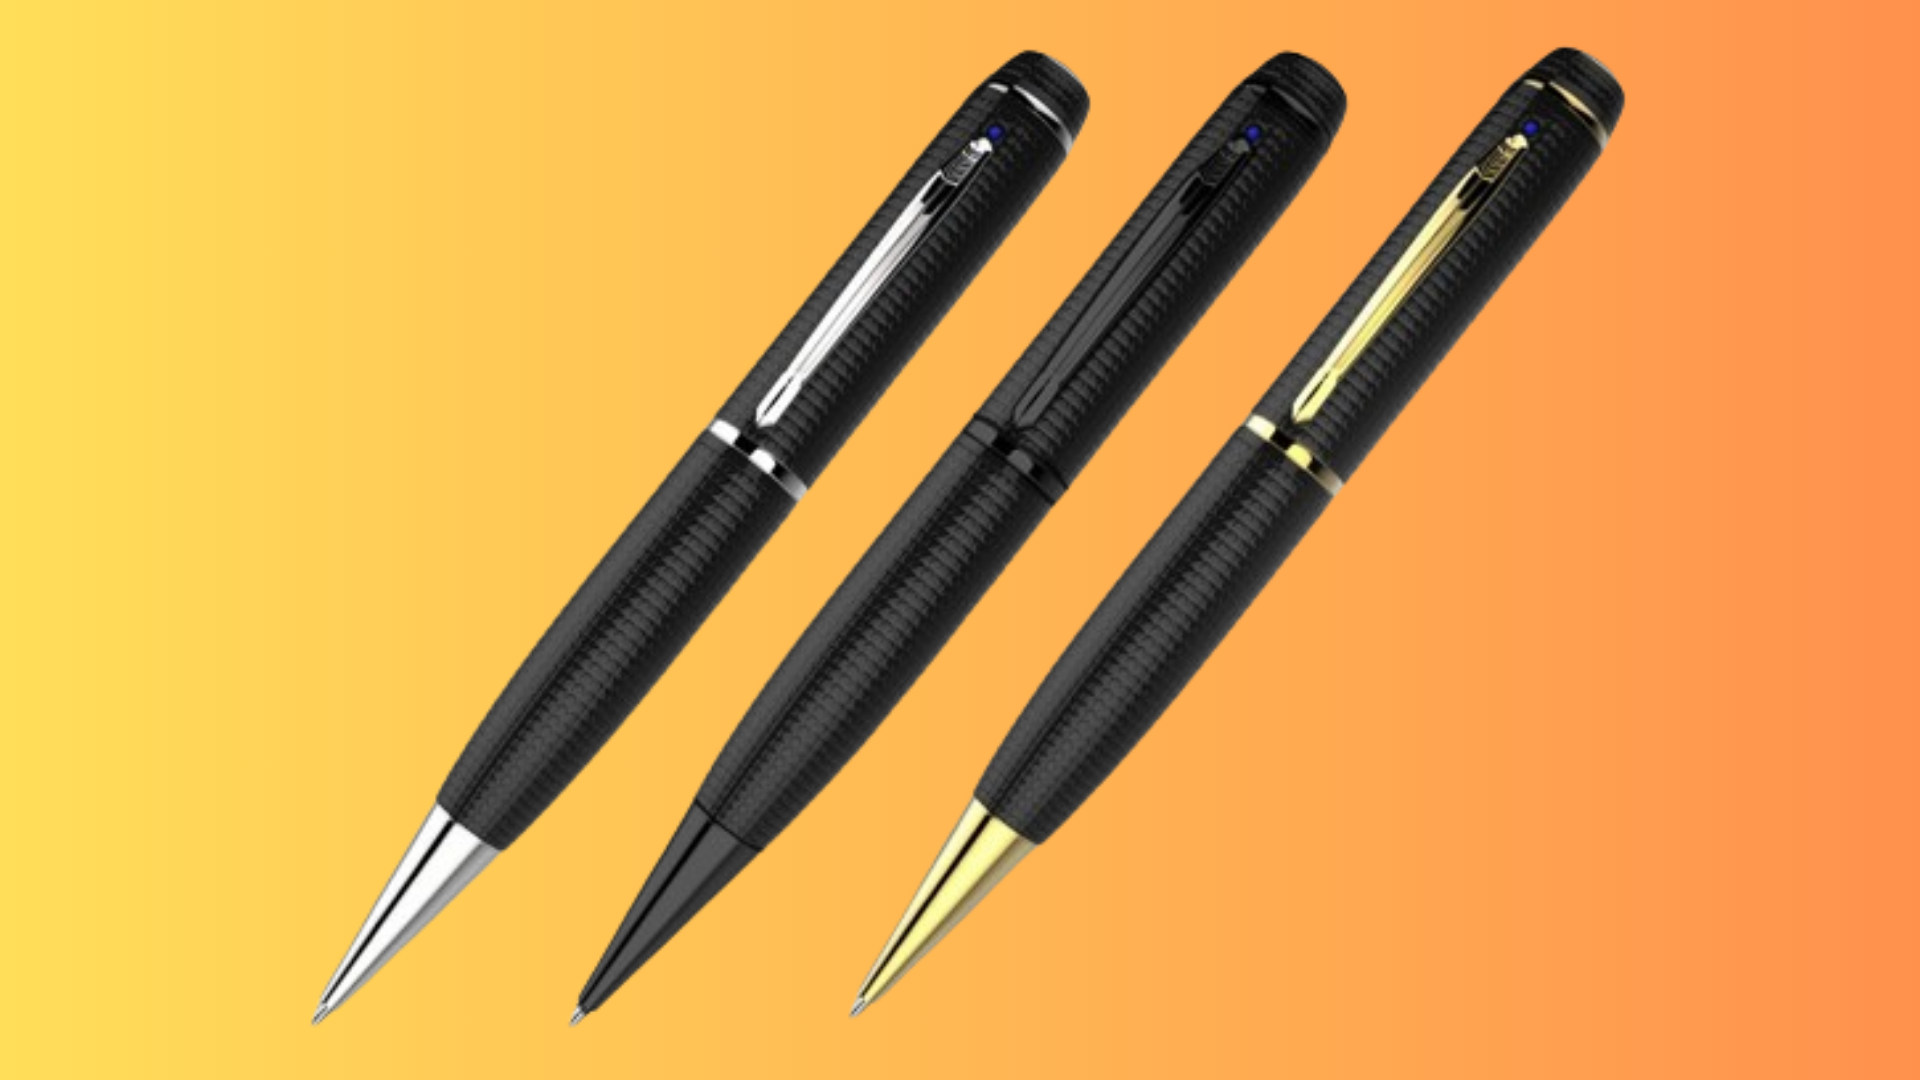 Three iSpy pens on orange background